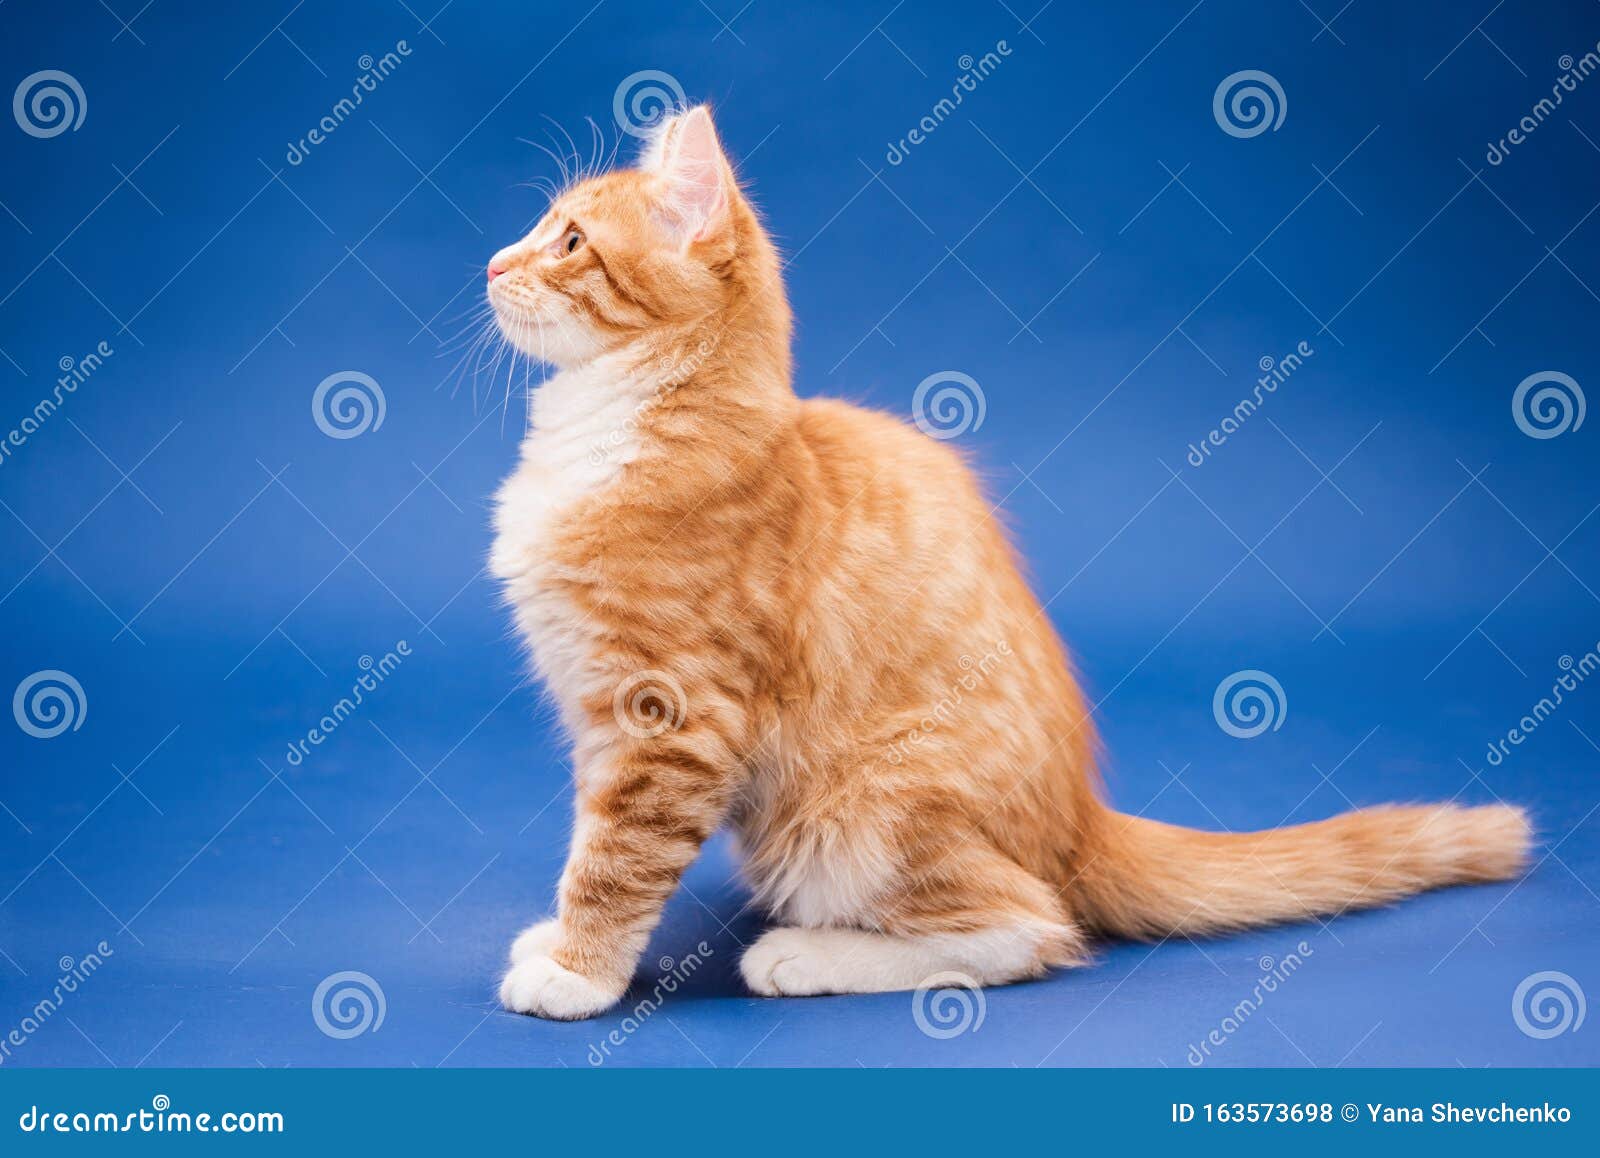 Có phải em ấy quá dễ thương không? Đây là một chú mèo con màu cam tươi sáng đang chăm chỉ khám phá thế giới xung quanh. Hãy xem ảnh để cùng chia sẻ niềm vui này!